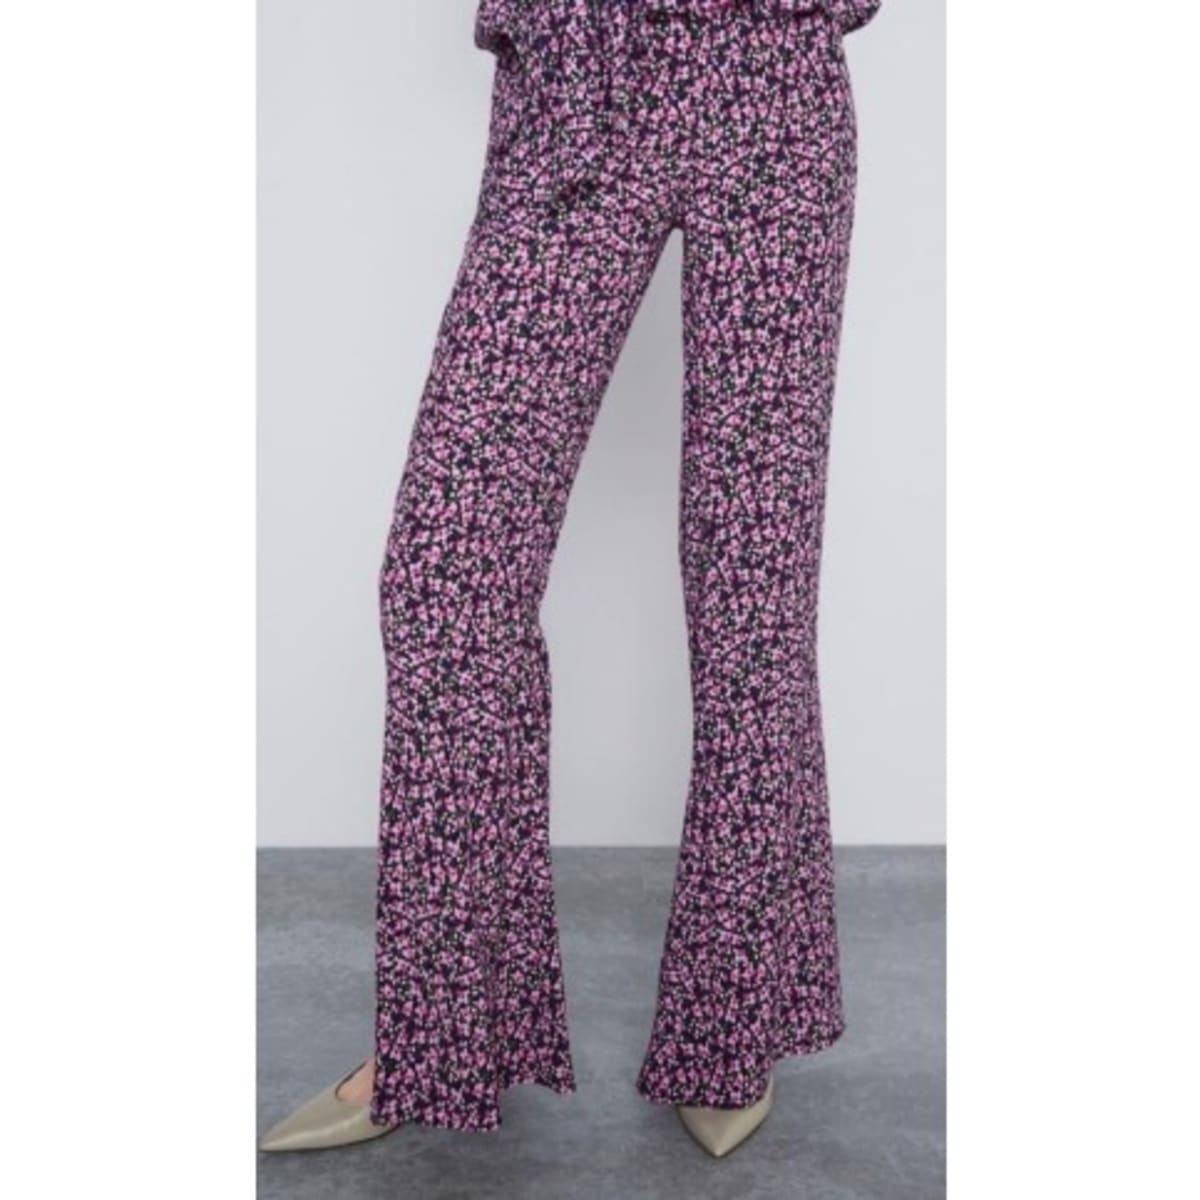 Zara Floral Printed Pants